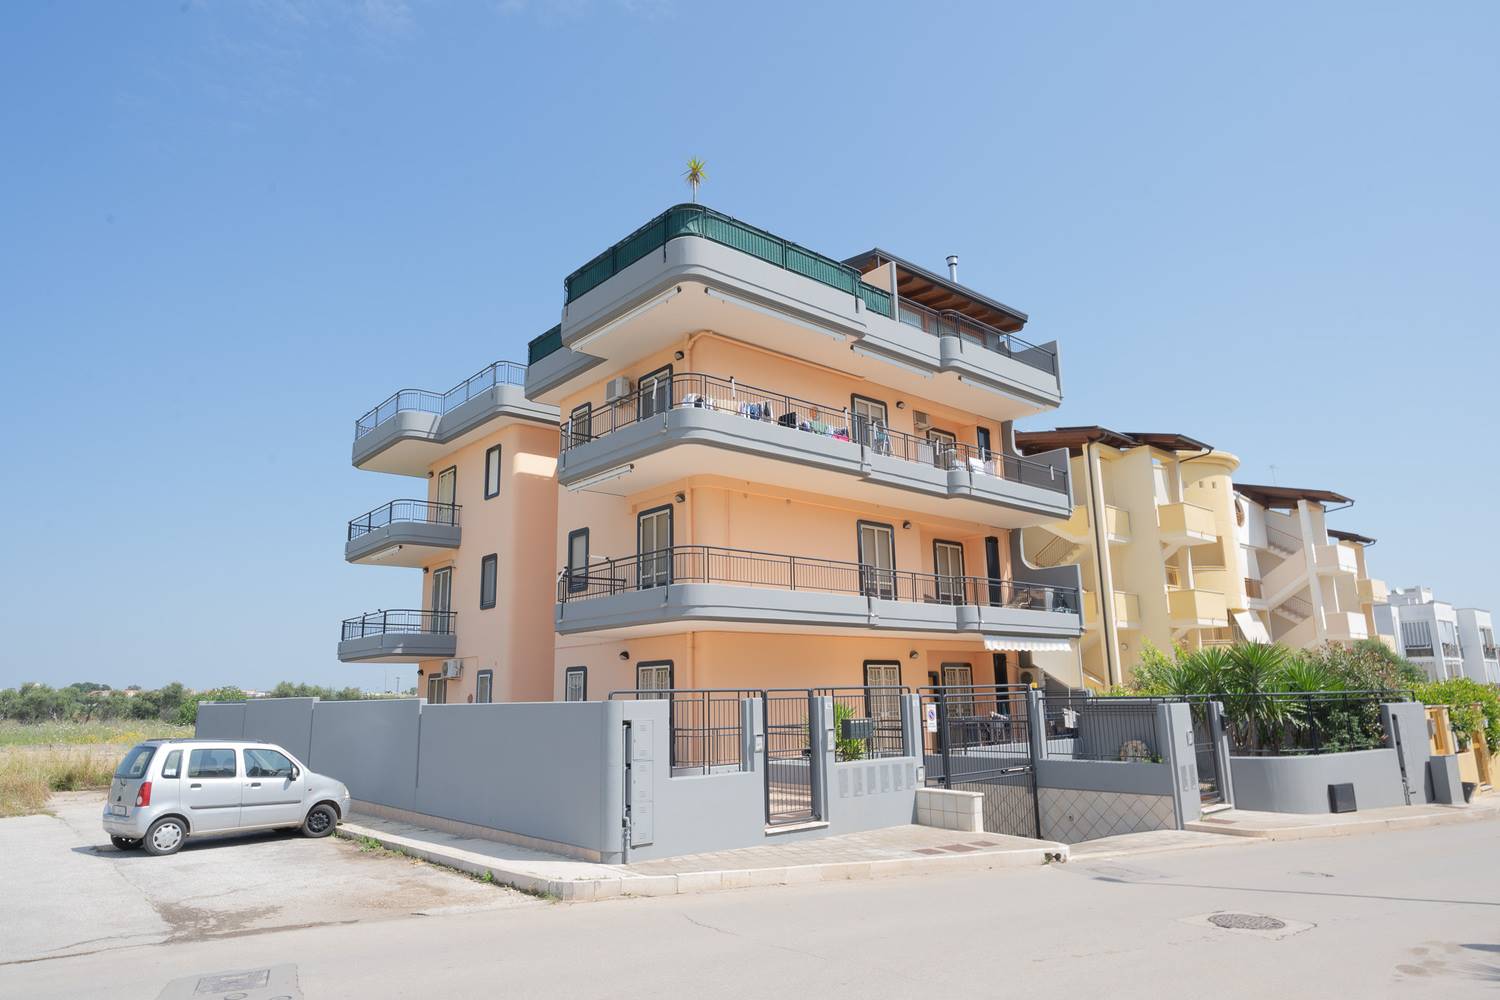 Appartamento in vendita a Palo del Colle, 5 locali, prezzo € 220.000 | CambioCasa.it